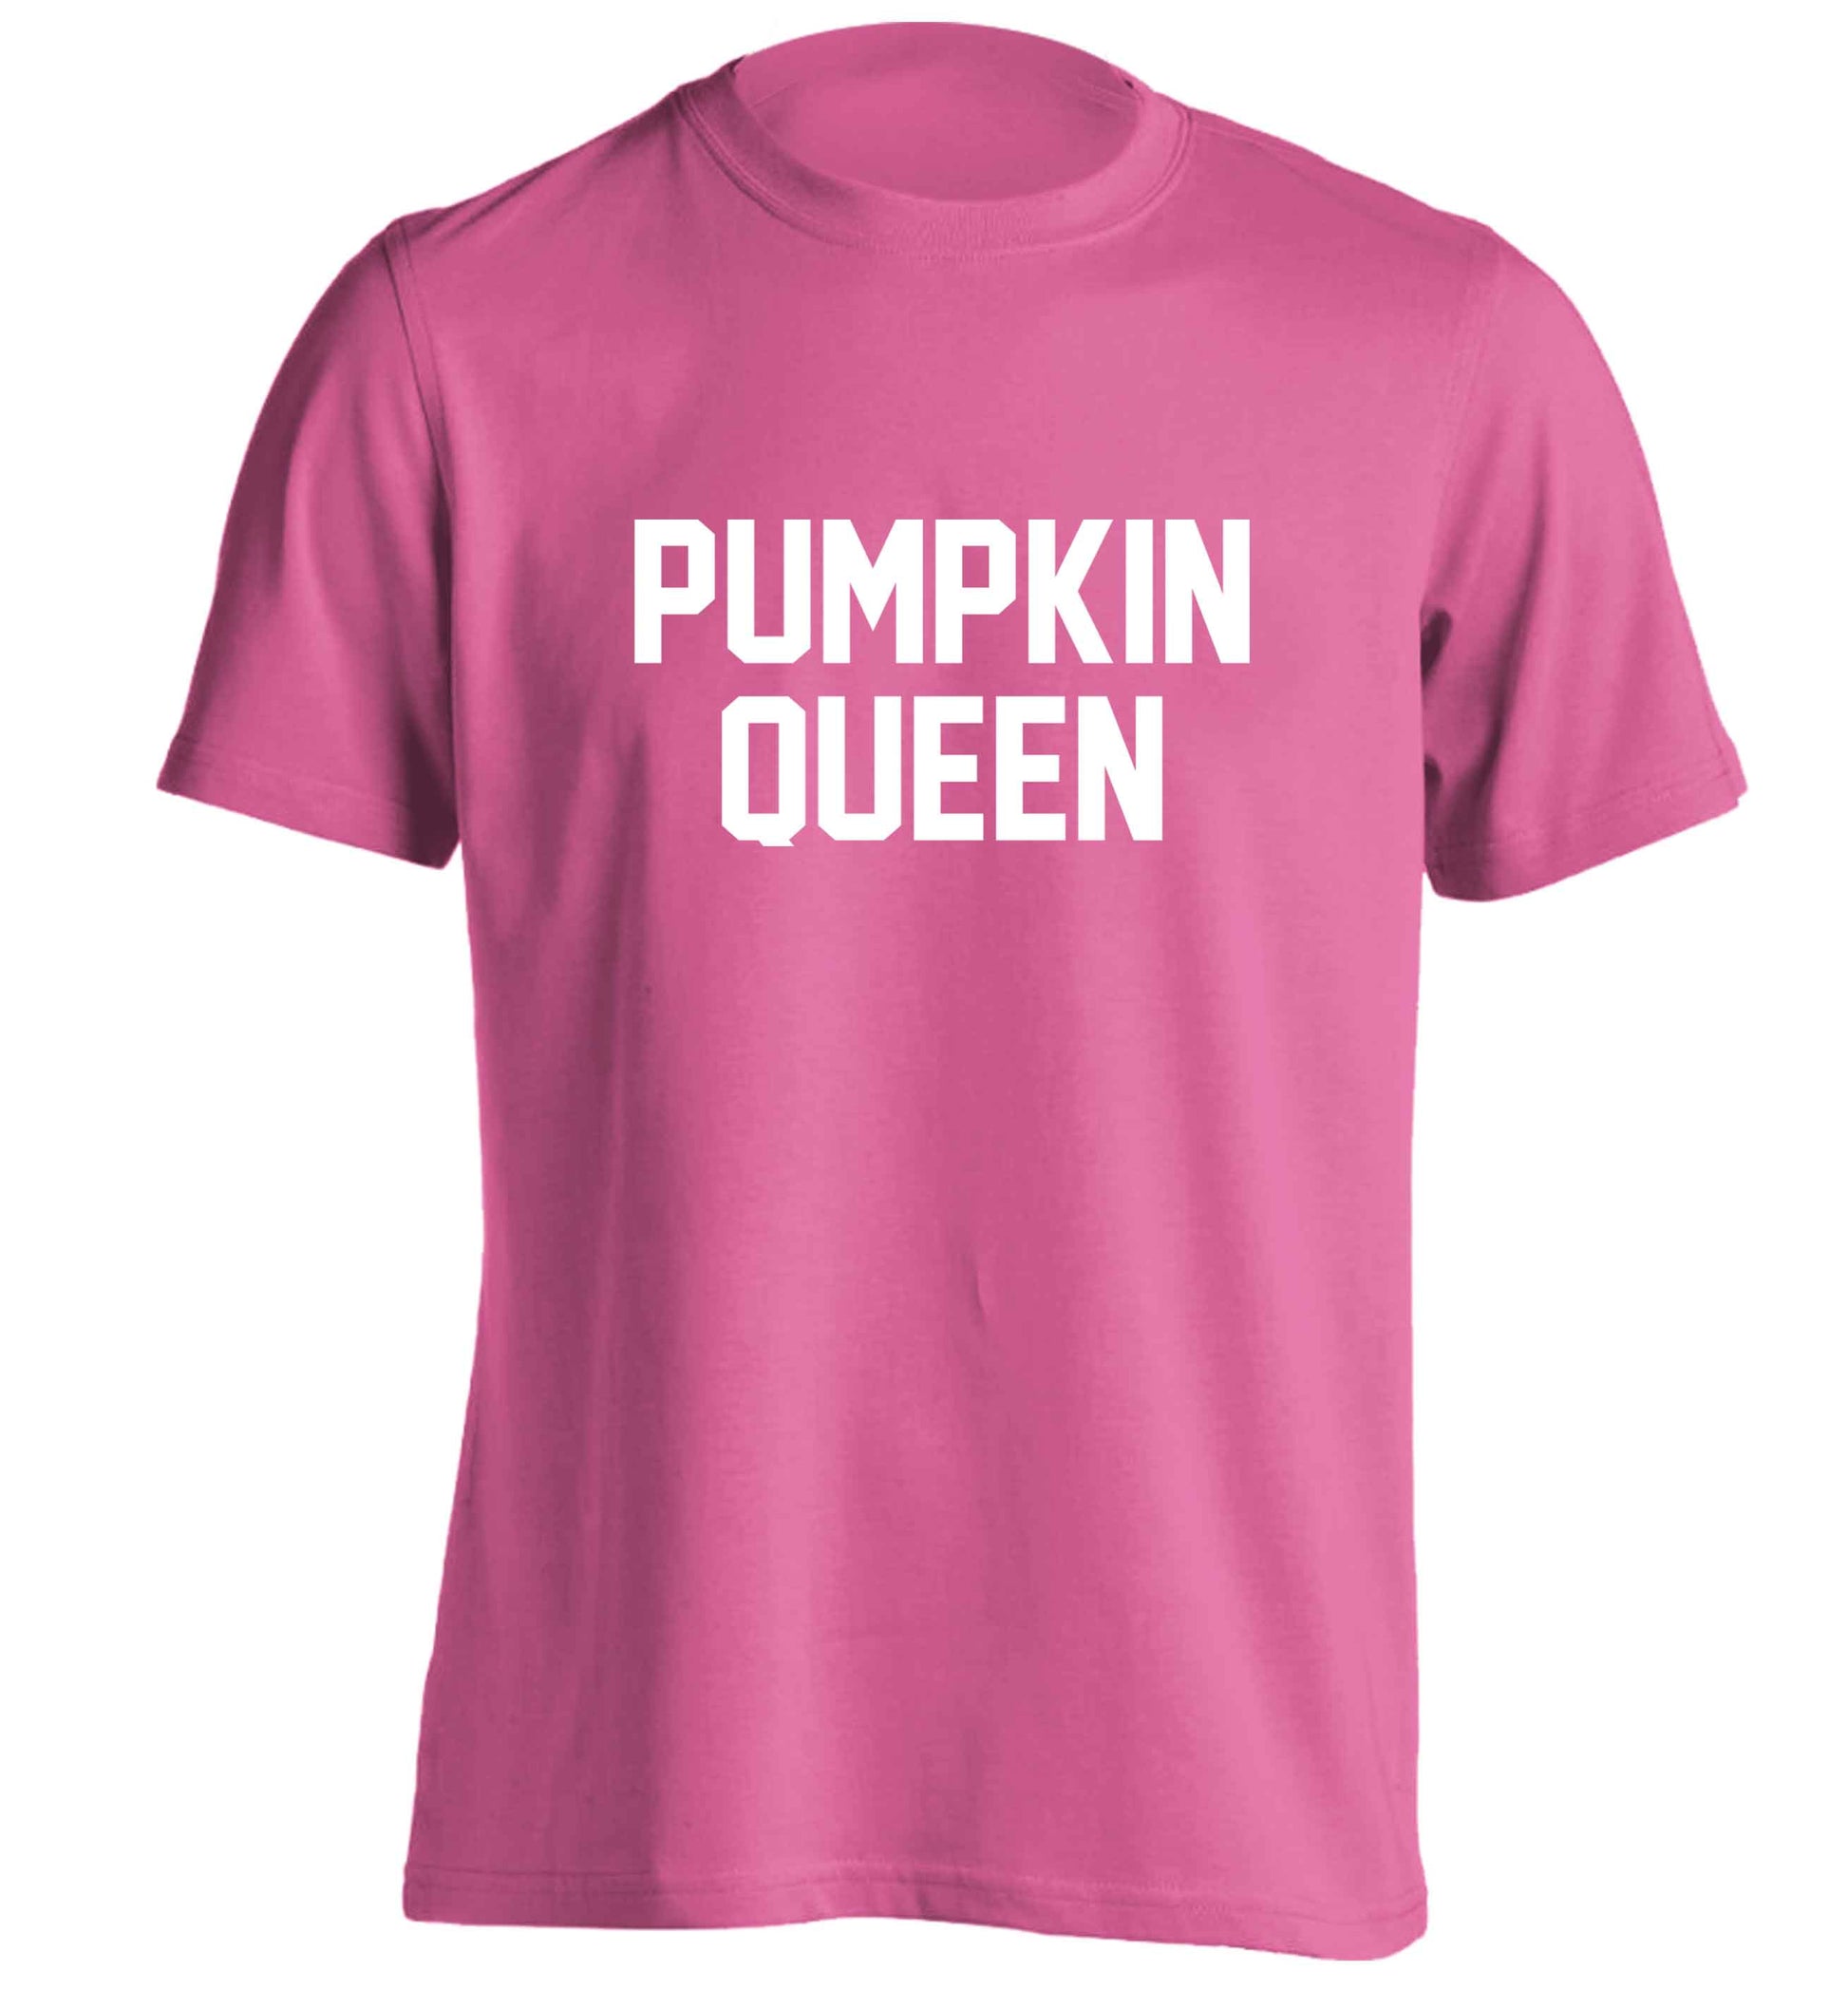 Pumpkin Queen adults unisex pink Tshirt 2XL